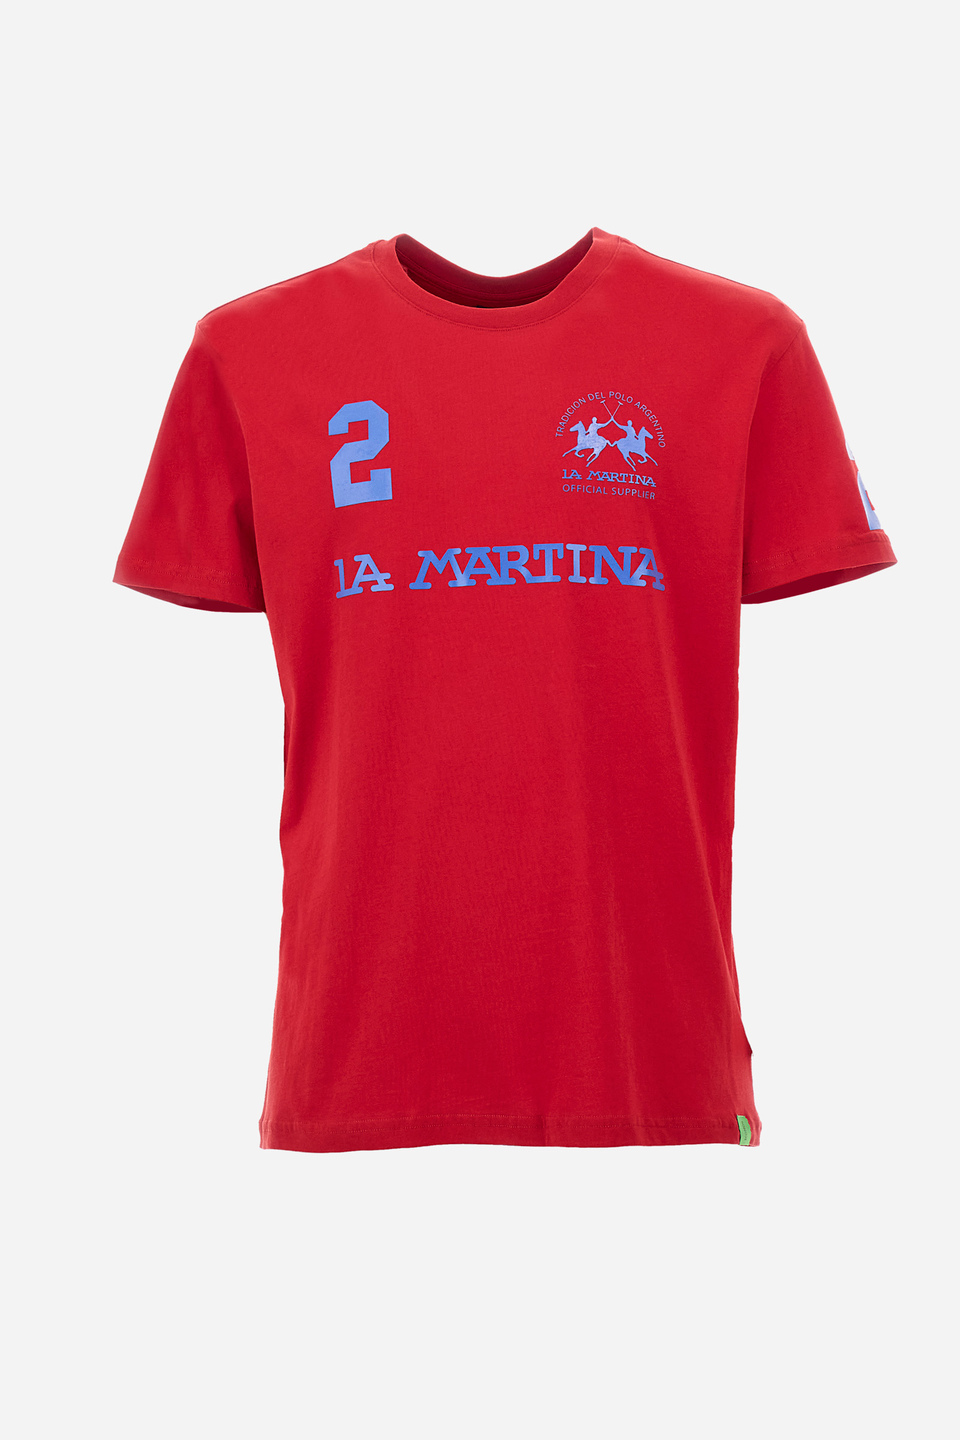 Tee-shirt homme coupe classique - Reichard | La Martina - Official Online Shop